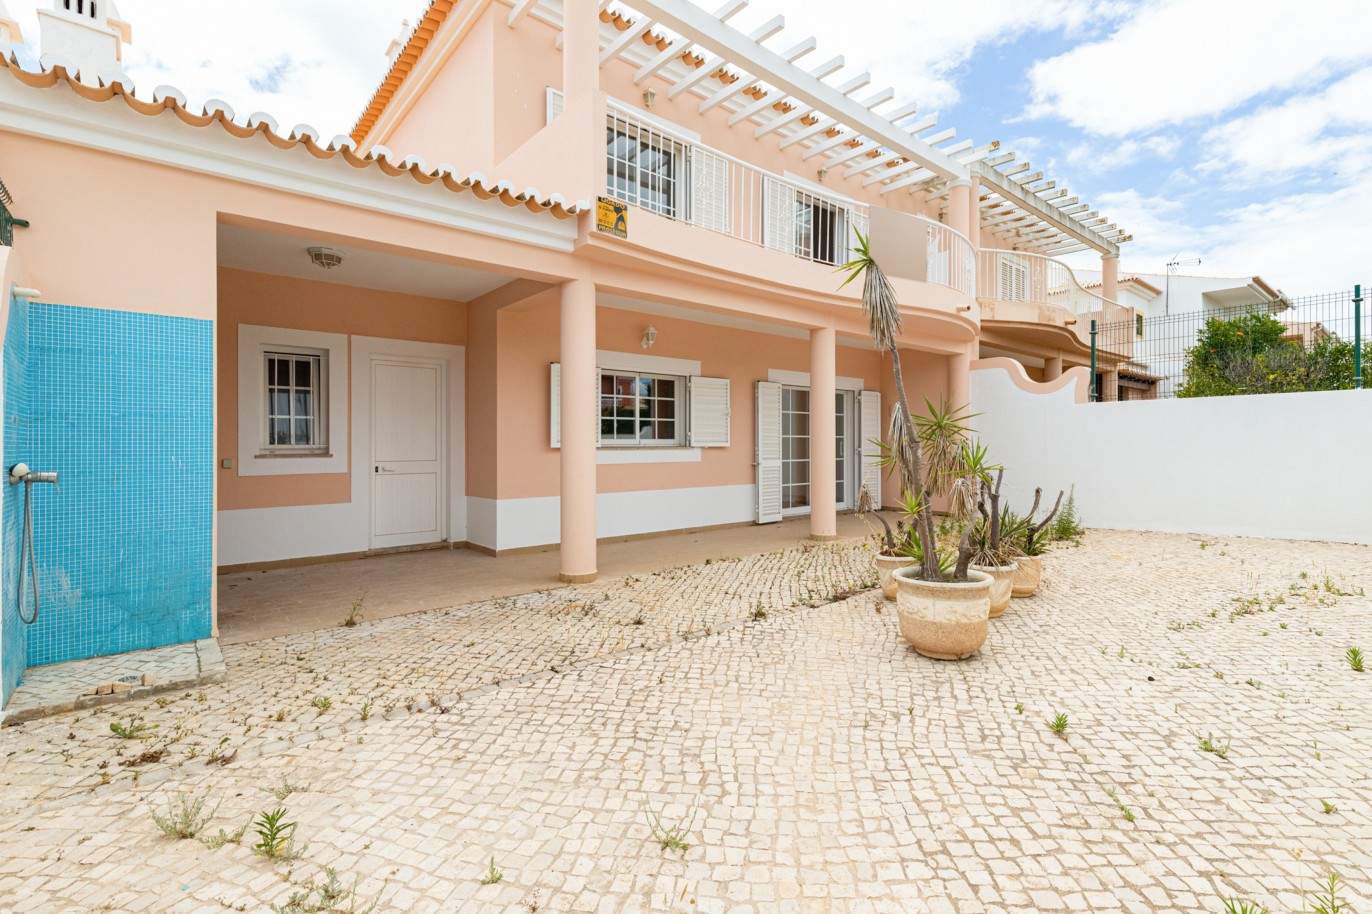 Villa de 3 dormitorios en venta en Porto de Mós, Lagos, Algarve_201788